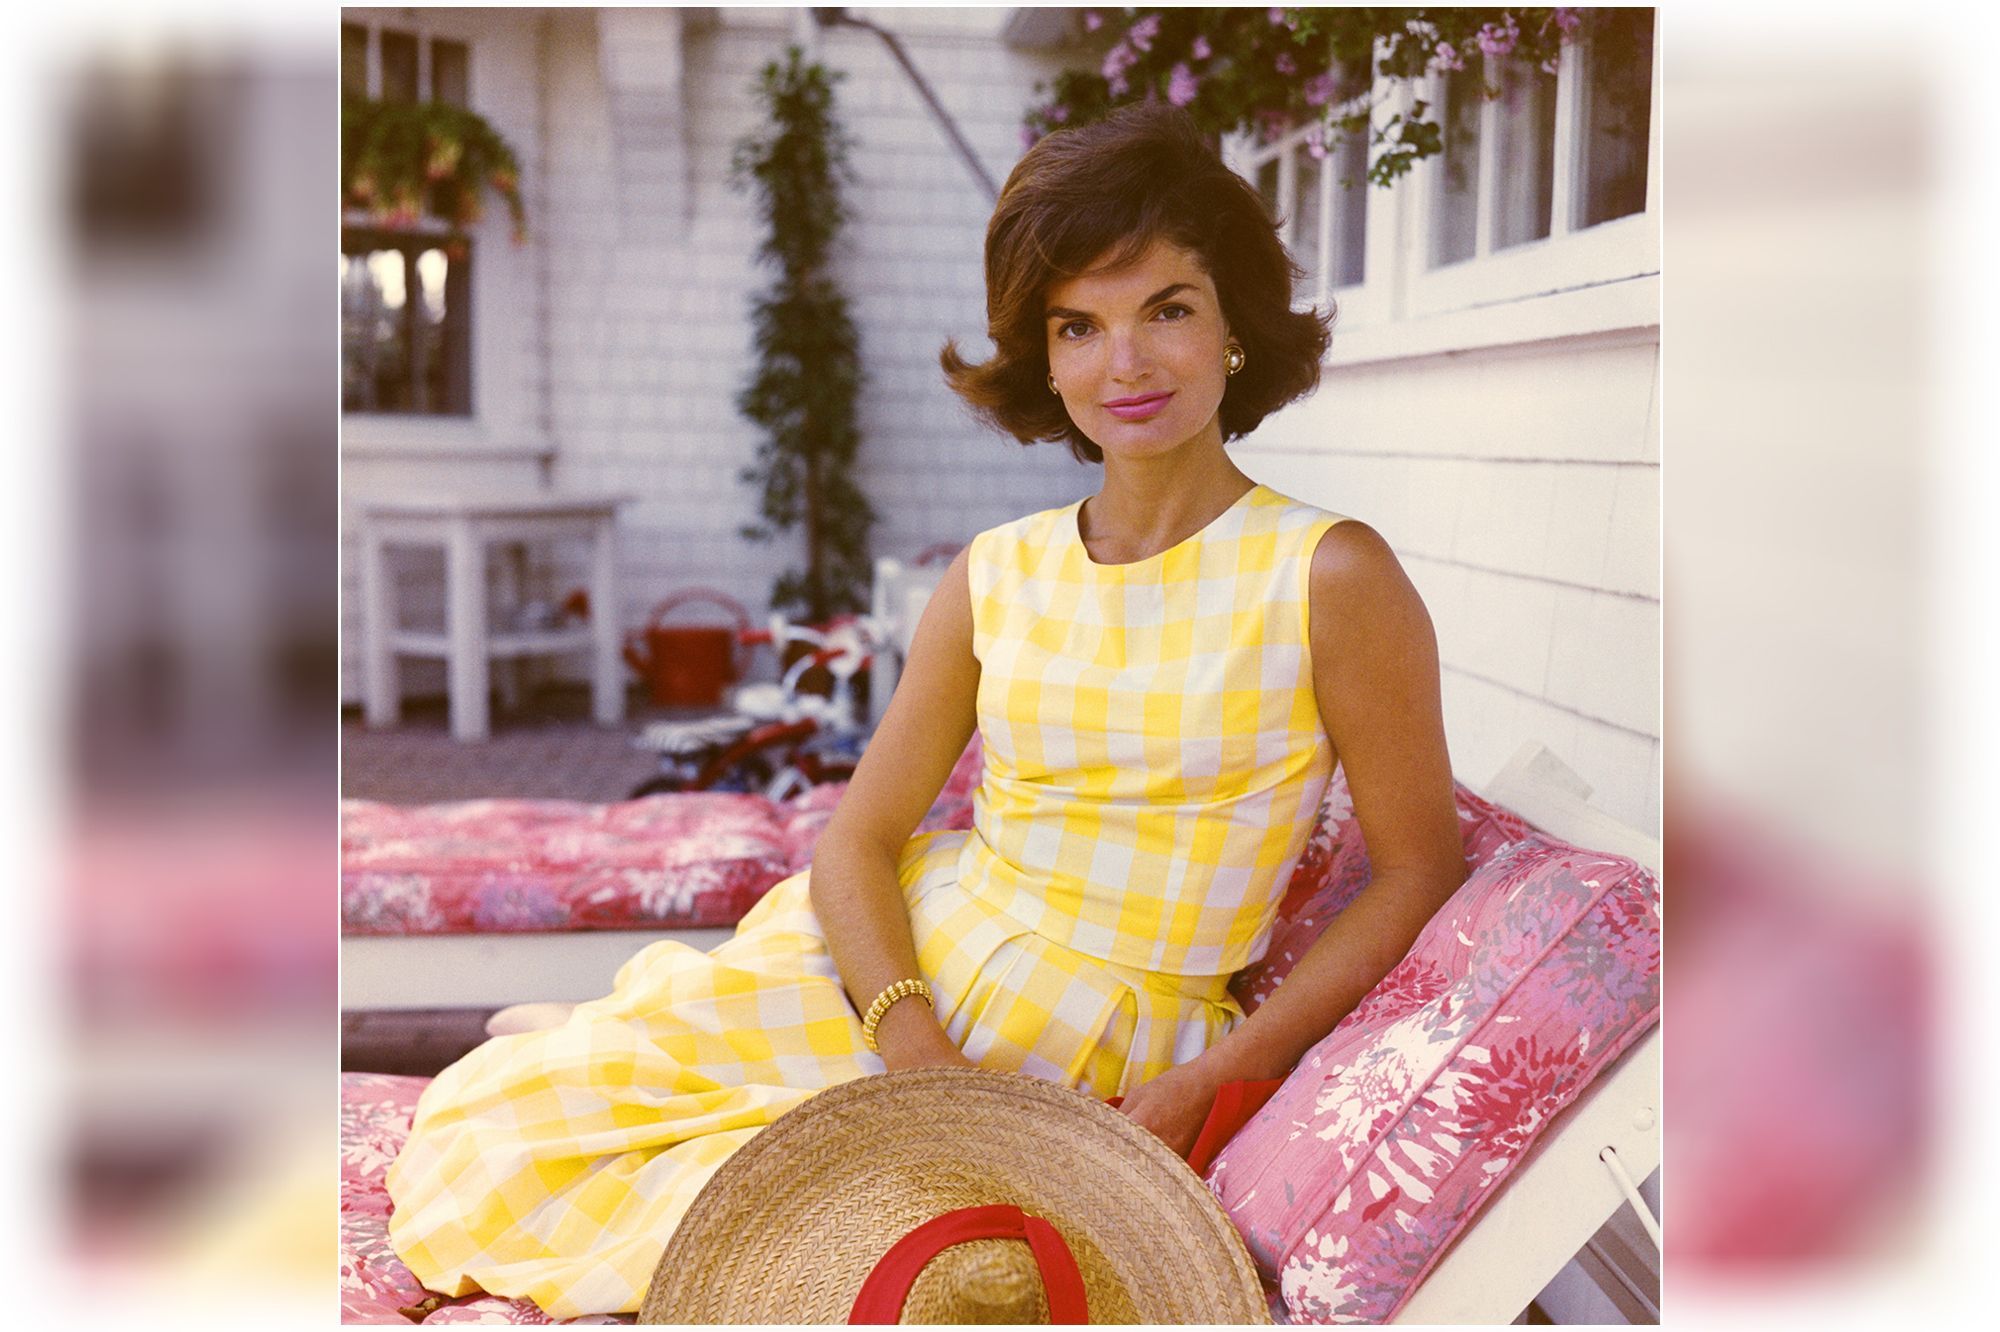 Le tailleur rose de Jackie Kennedy à Dallas en 1963 - Esprit de Gabrielle J...